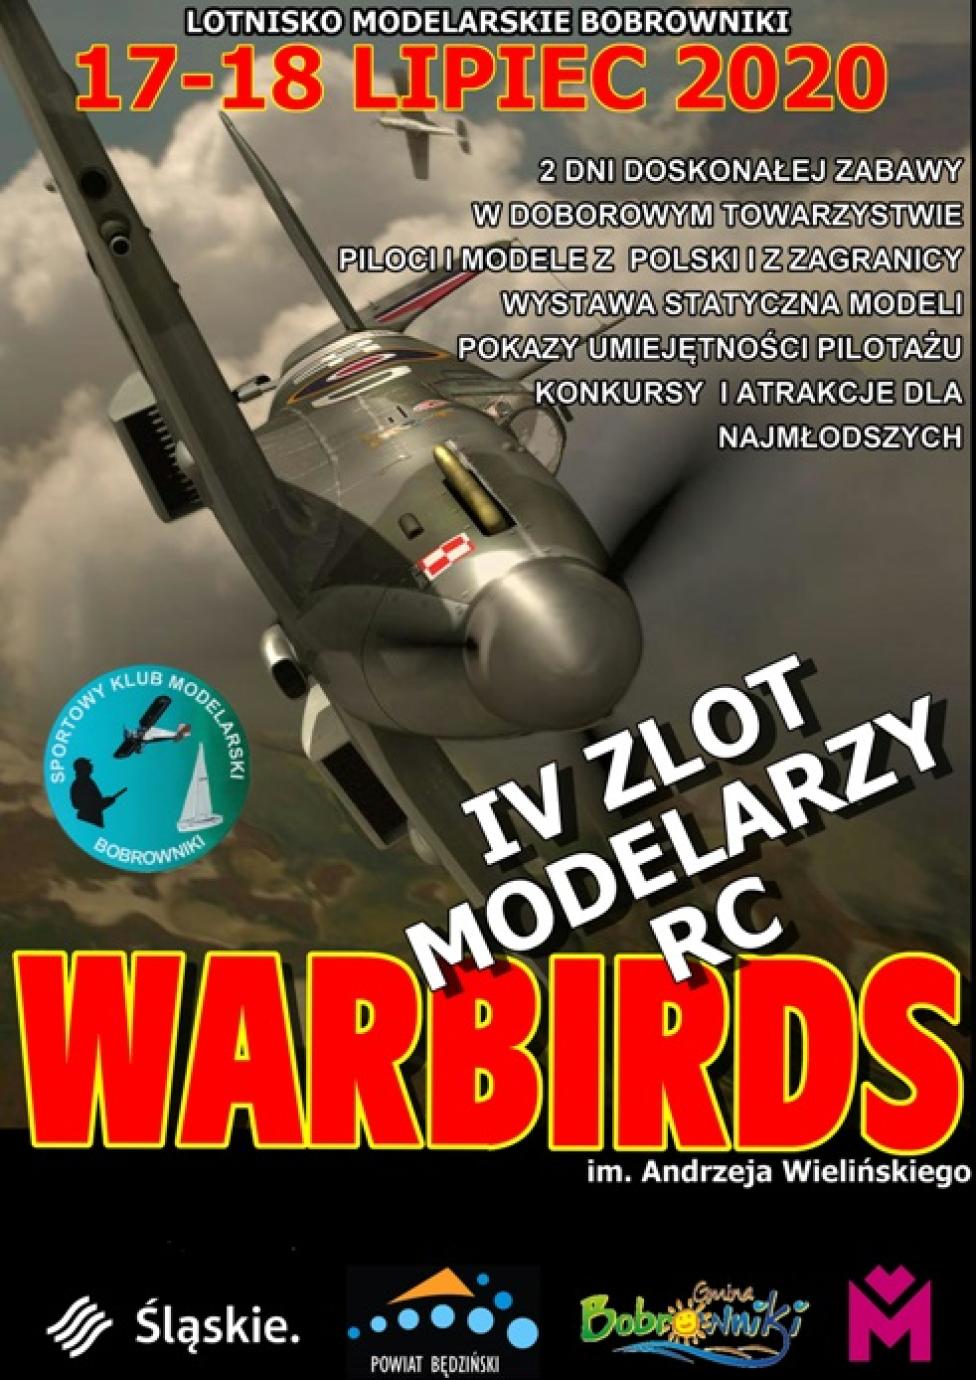 Zlot Warbirds 2020 w Bobrownikach (fot. skm-bobrowniki.pl)